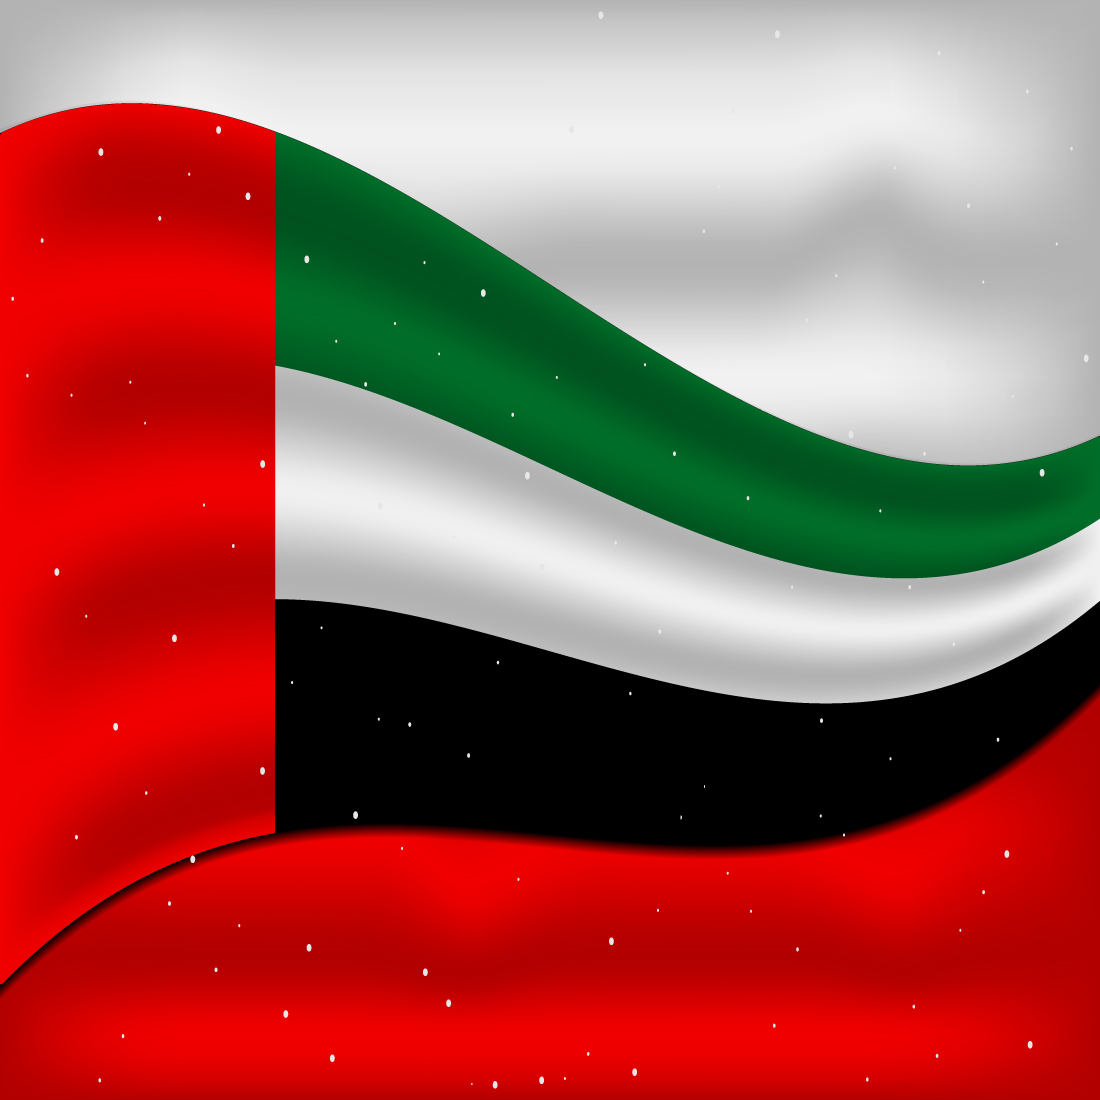 Exquisite image of United Arab Emirates flag.